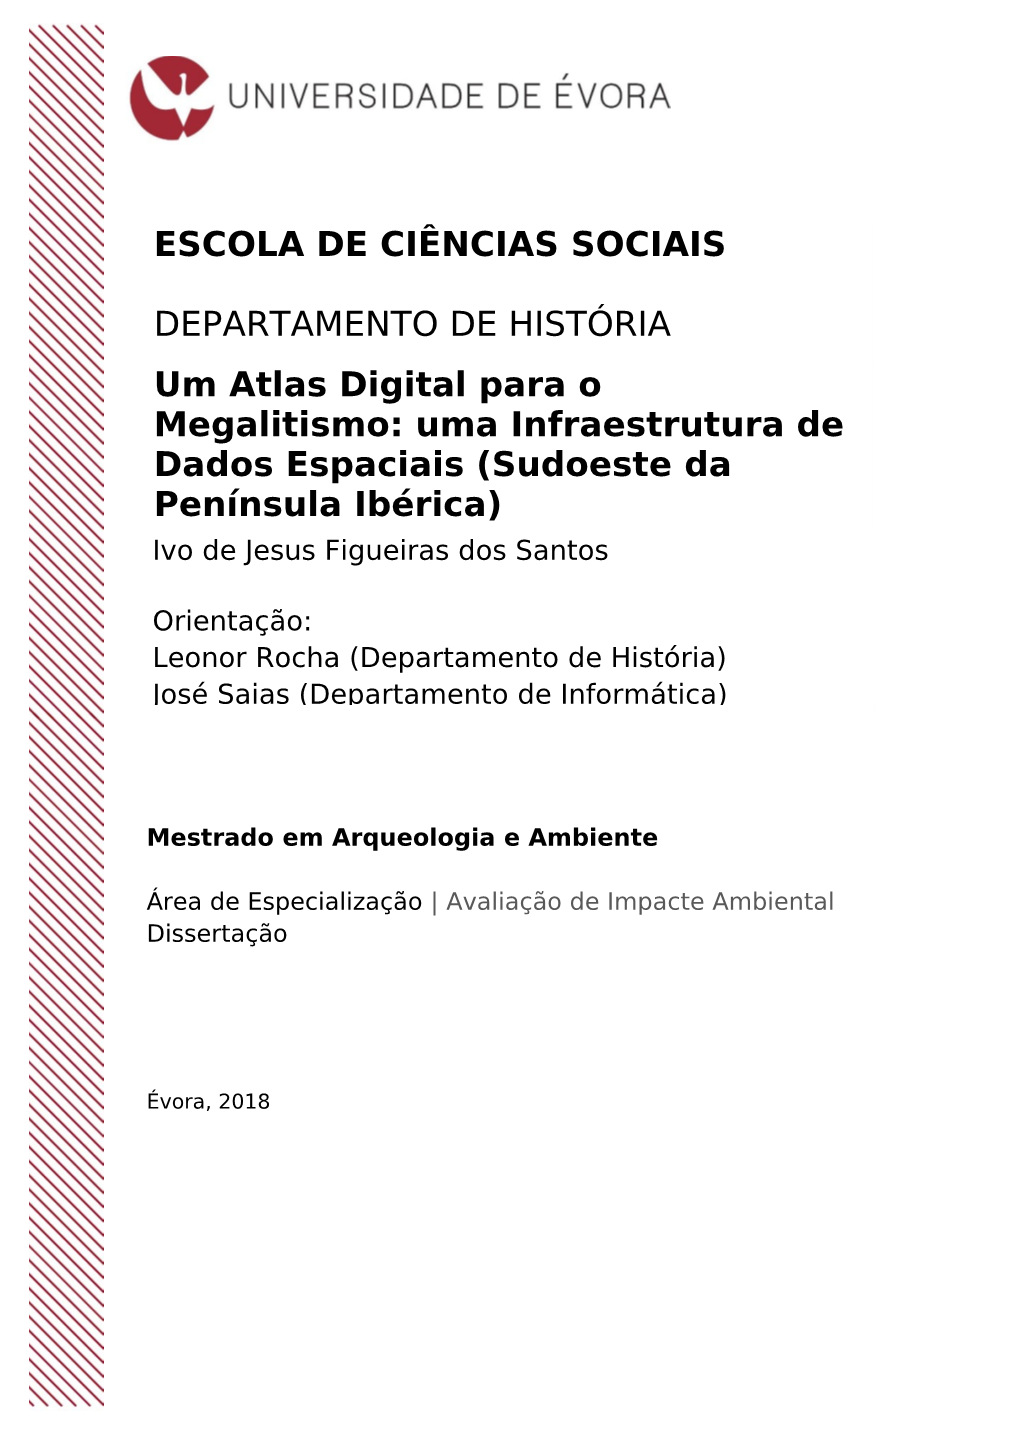 Um Atlas Digital Para O Megalitismo: Uma Infraestrutura De Dados Espaciais (Sudoeste Da Península Ibérica) ESCOLA DE CIÊNCIAS